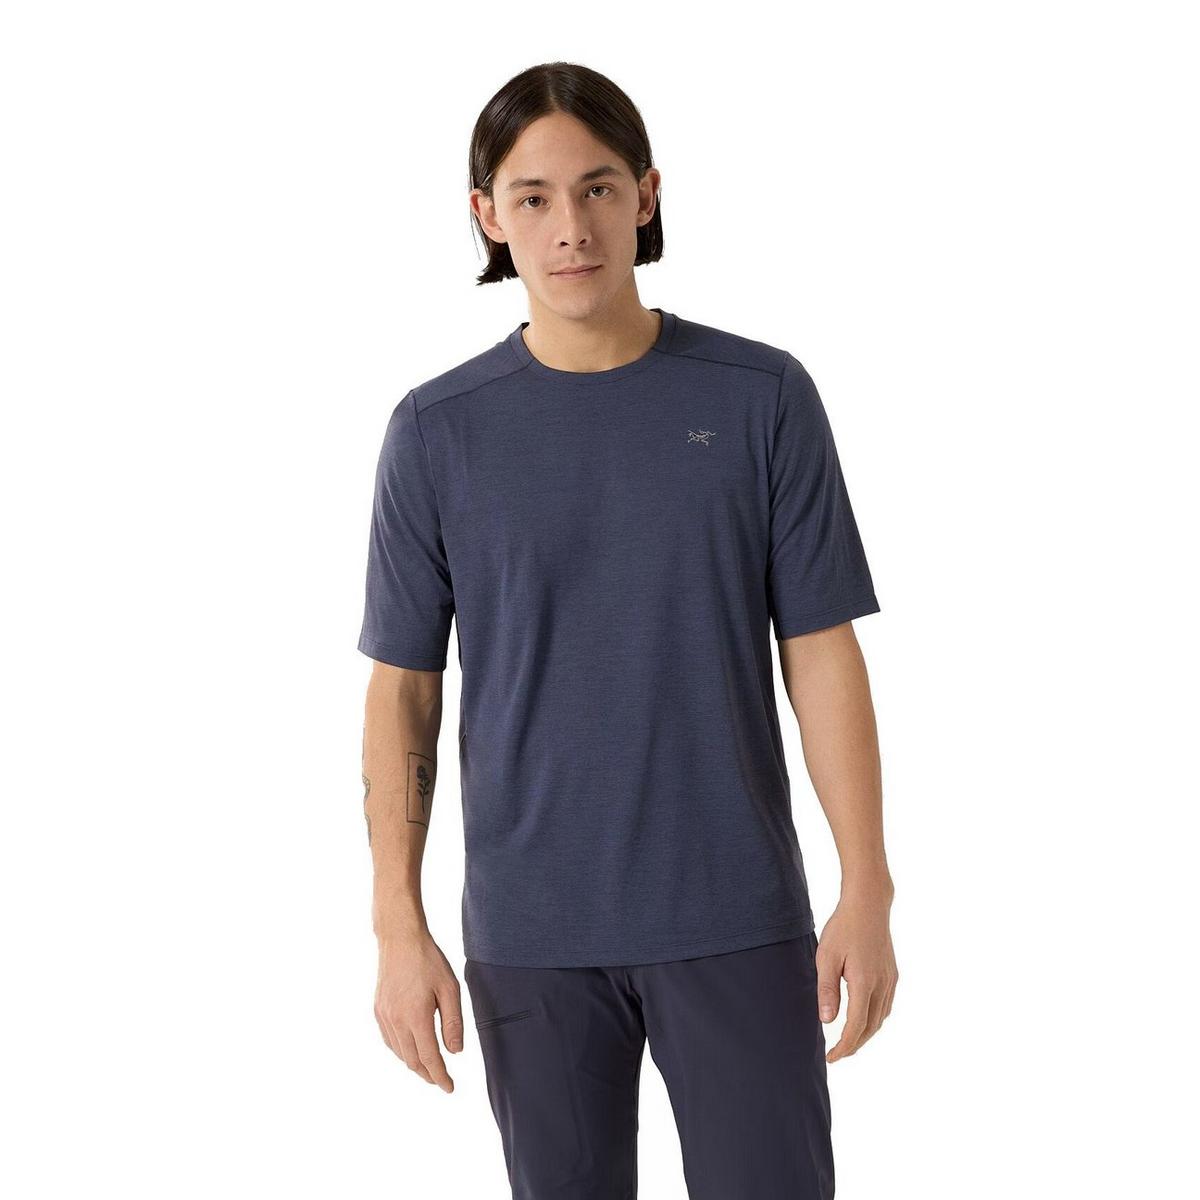 Arcteryx Men's Cormac Crew Short-Sleeve T-Shirt - Navy